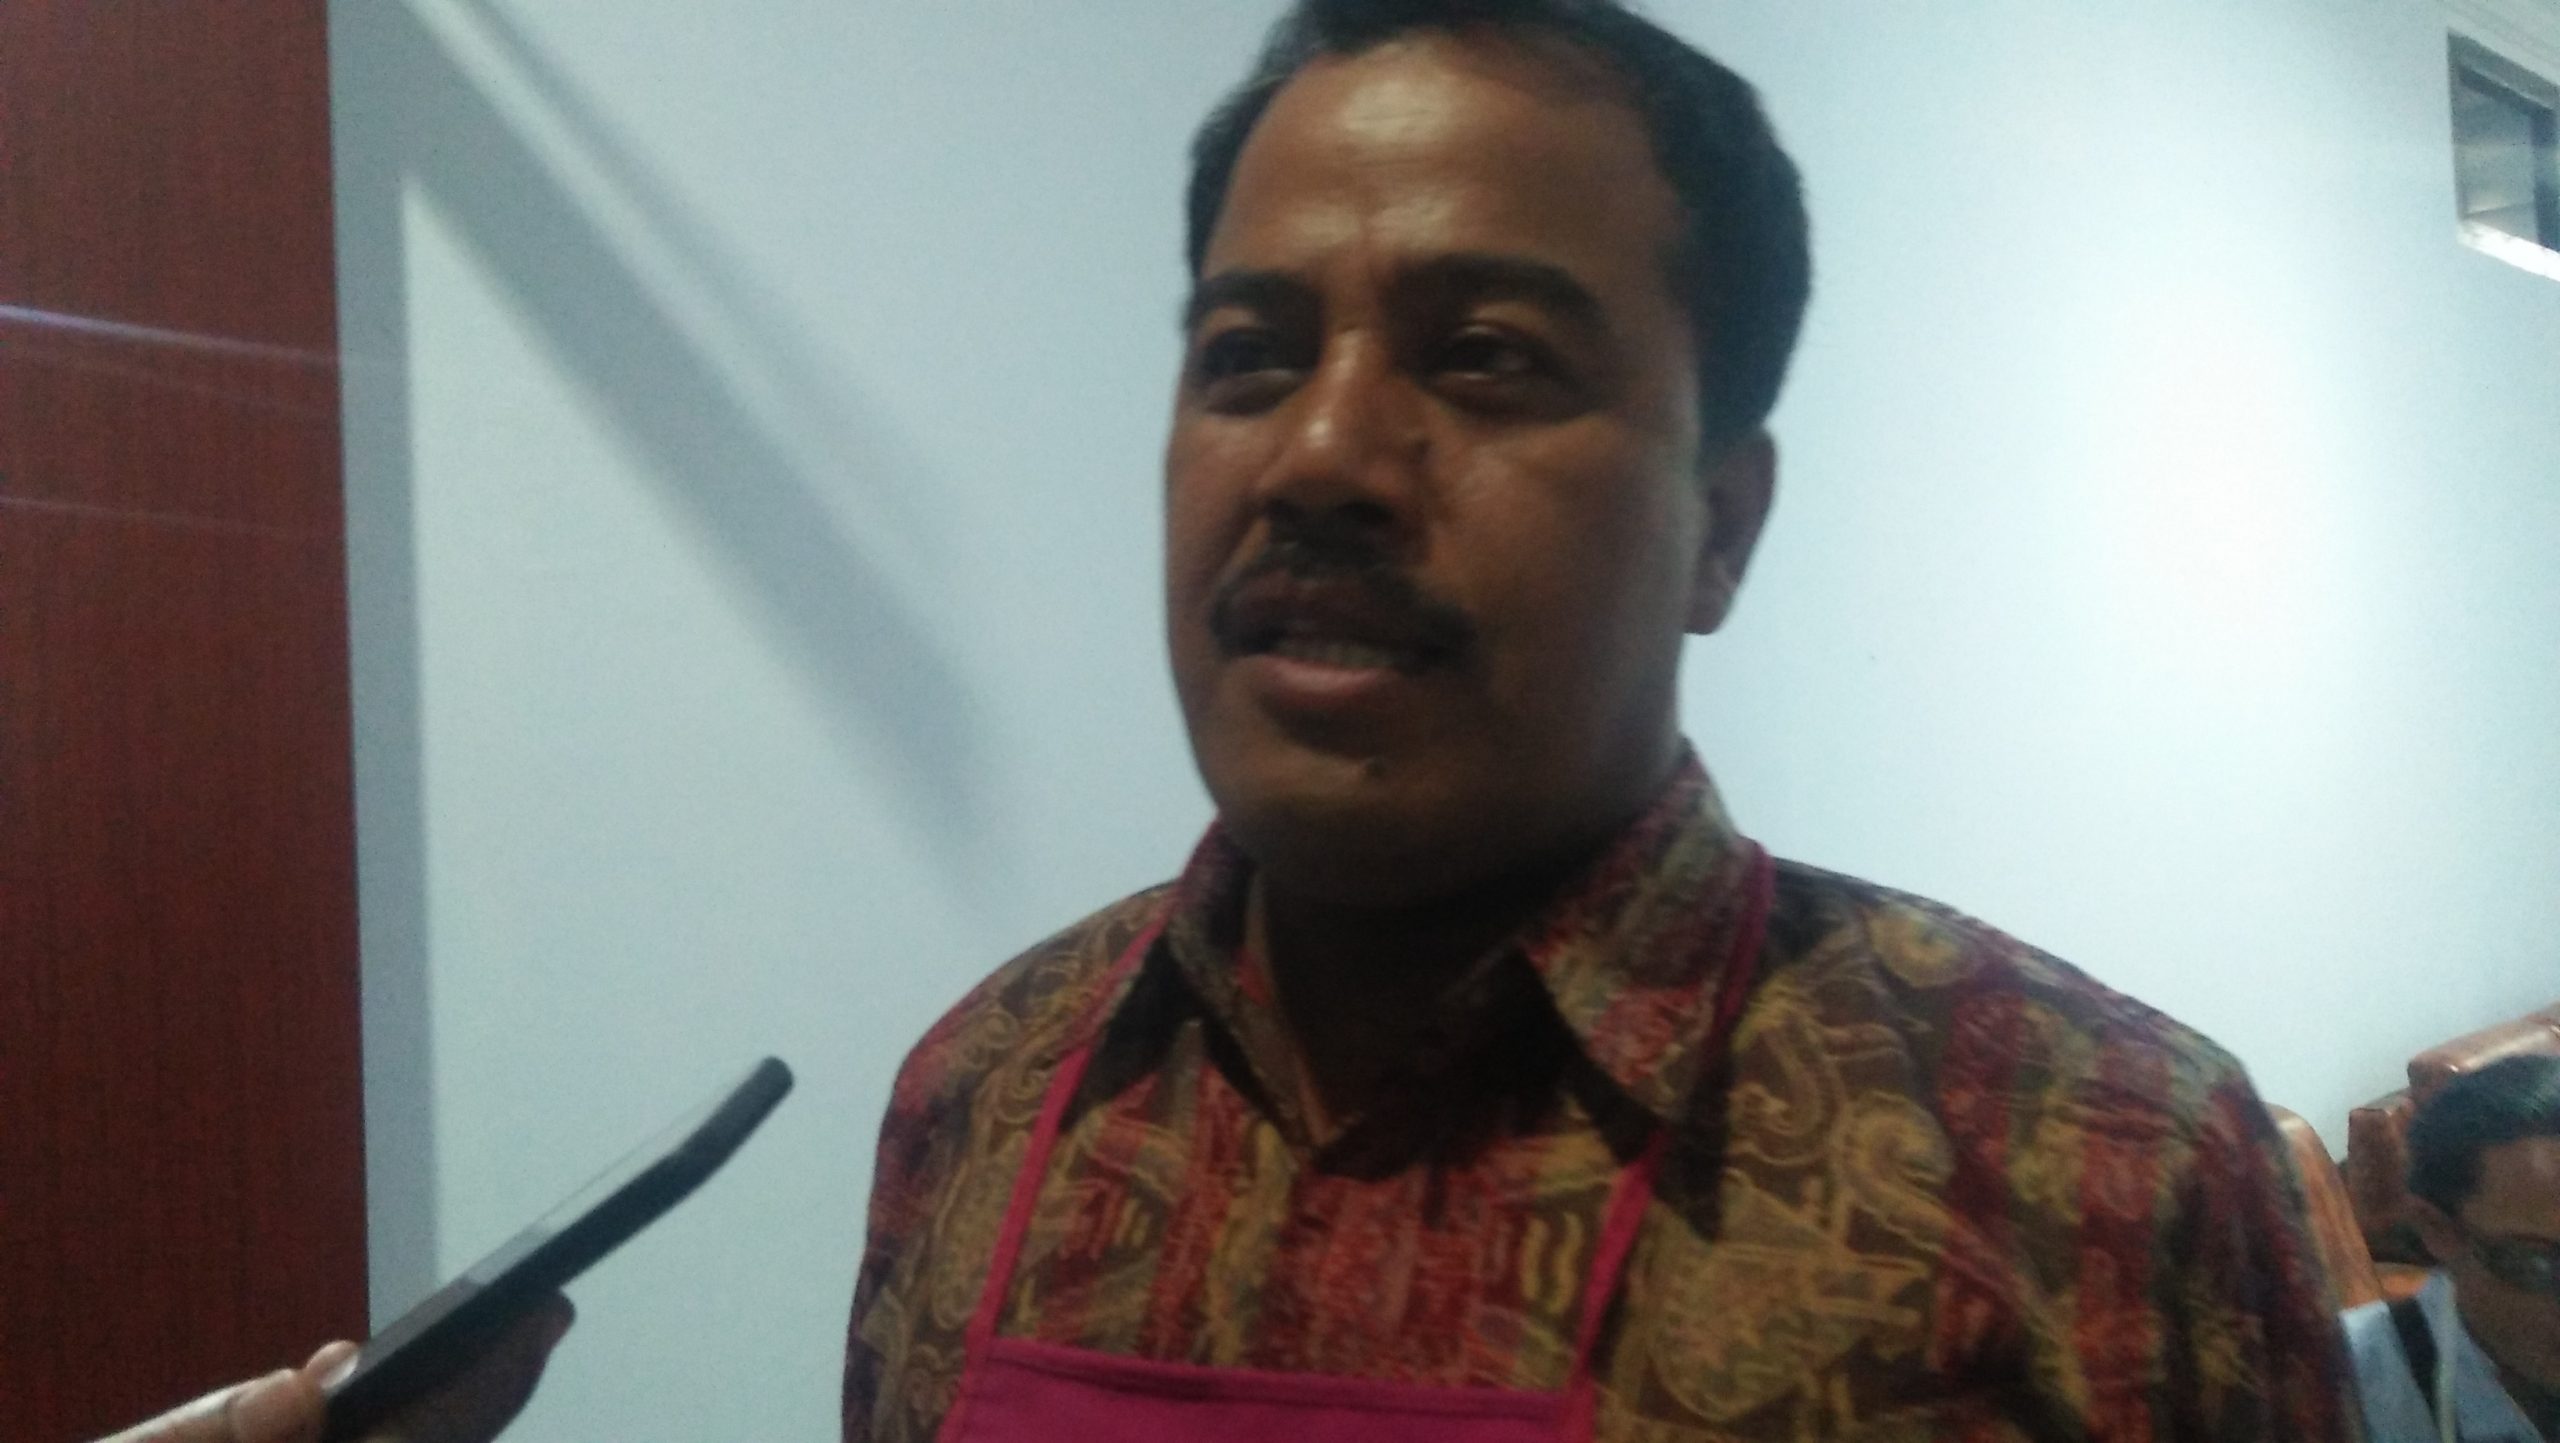 Waka DPRD Aivandri Berang, Inspektorat Belum Juga Sampaikan LHP